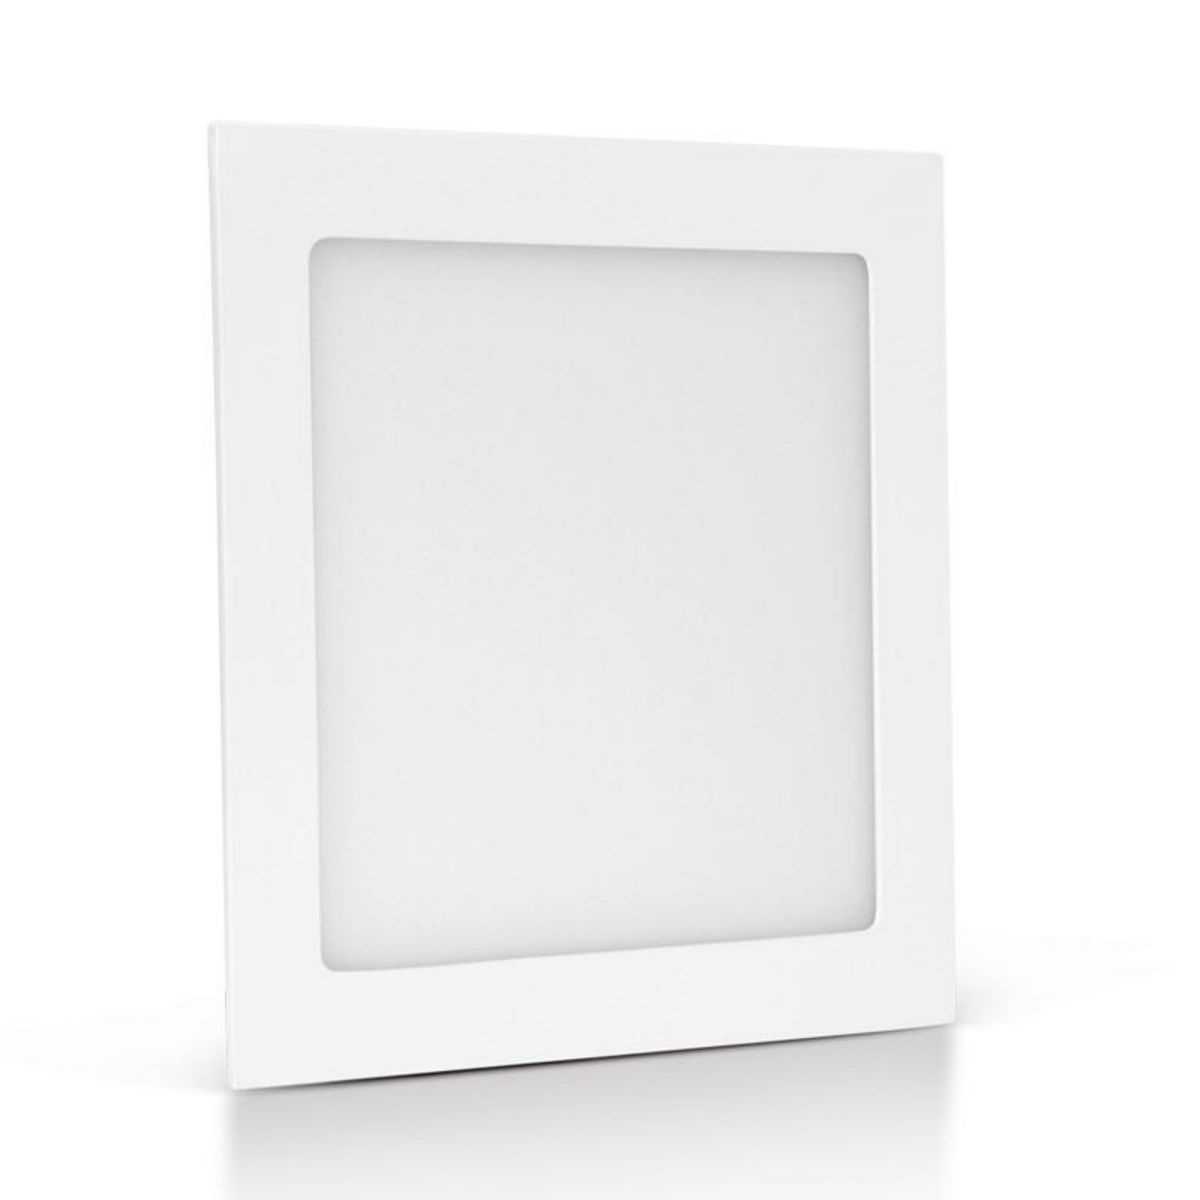 ASLO Panneau LED carré 120 x 120mm 6W 4000K blanc neutre ASLO